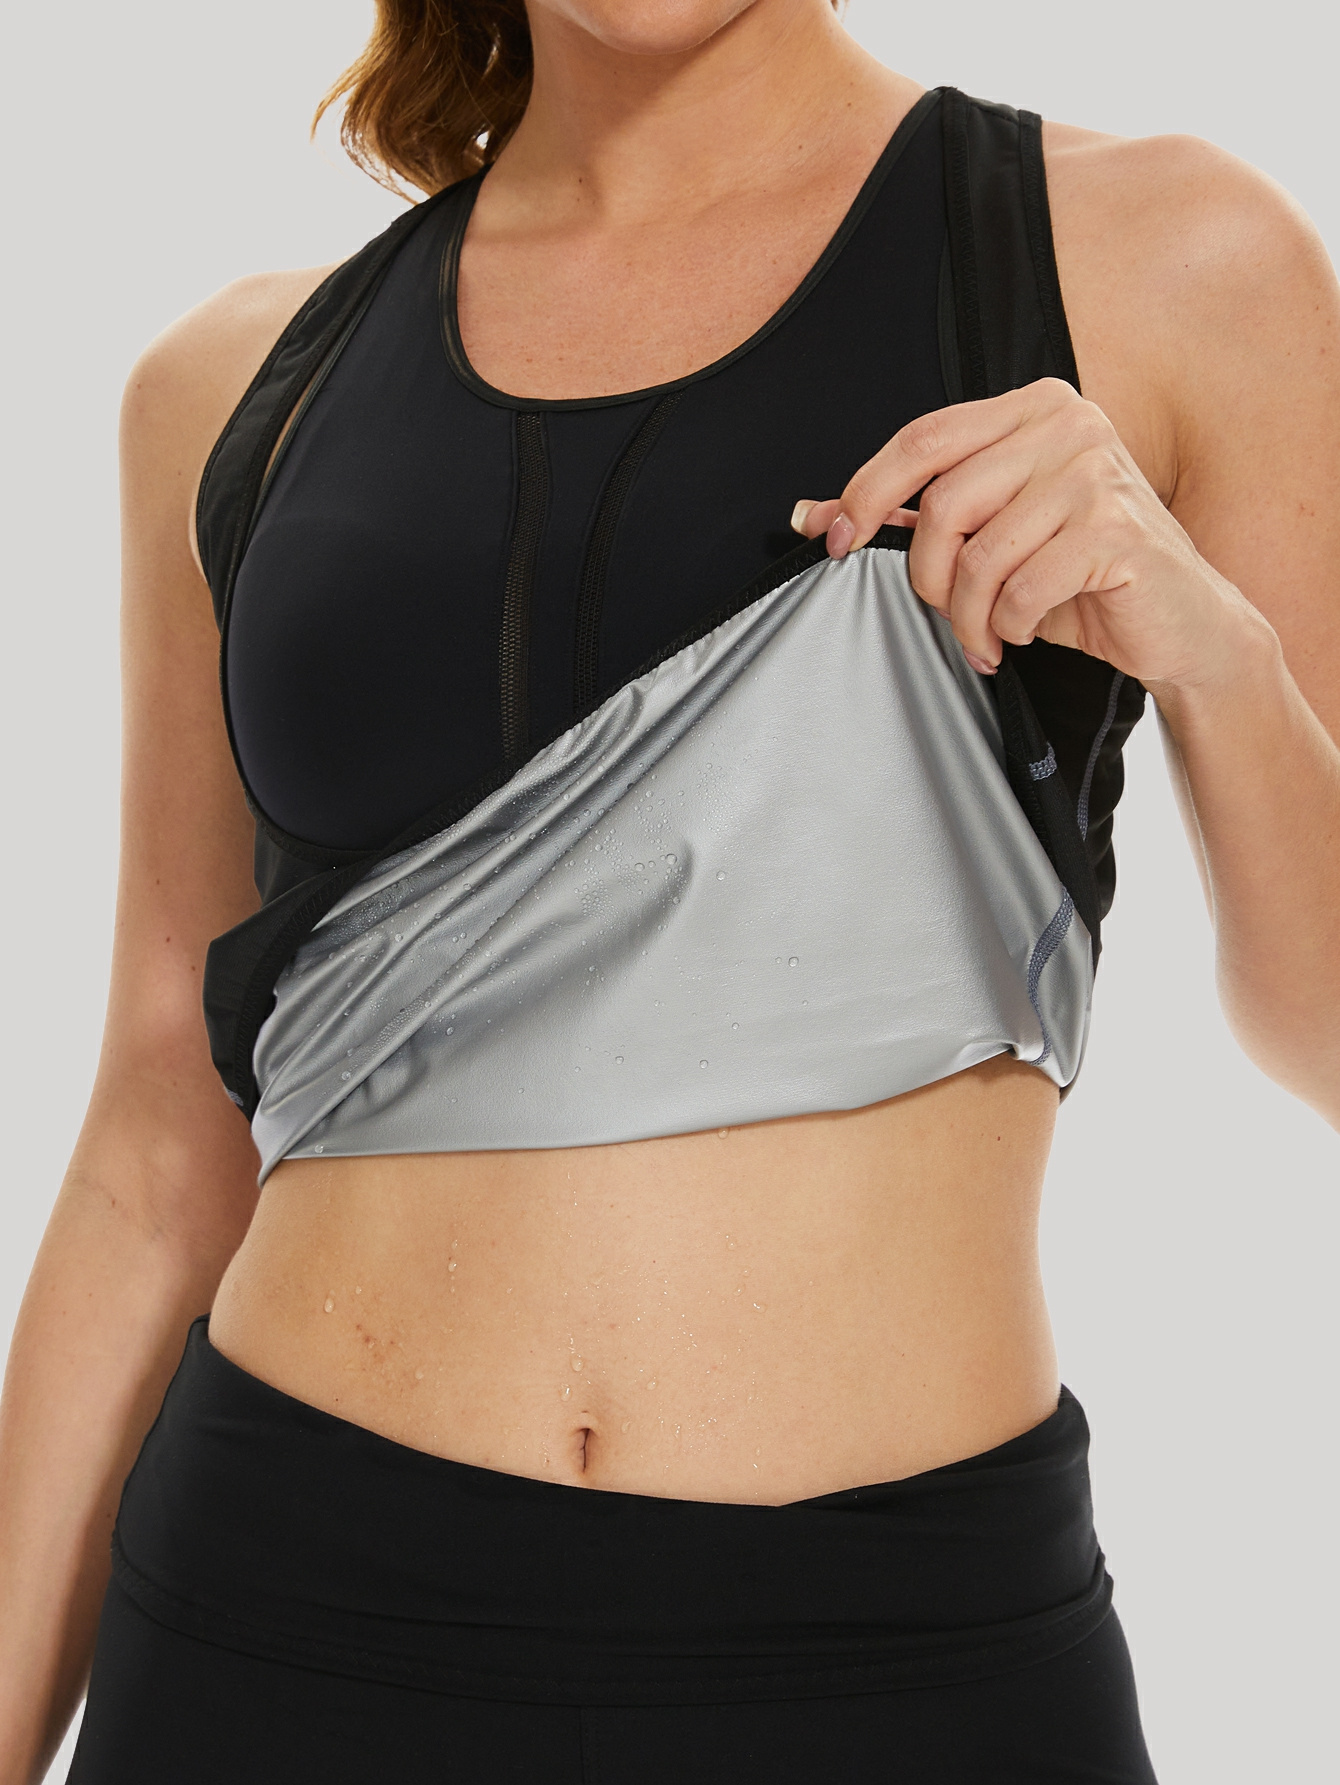 NINGMI Sweat Vest for Women Sauna Tops Workout T Shirt Waist